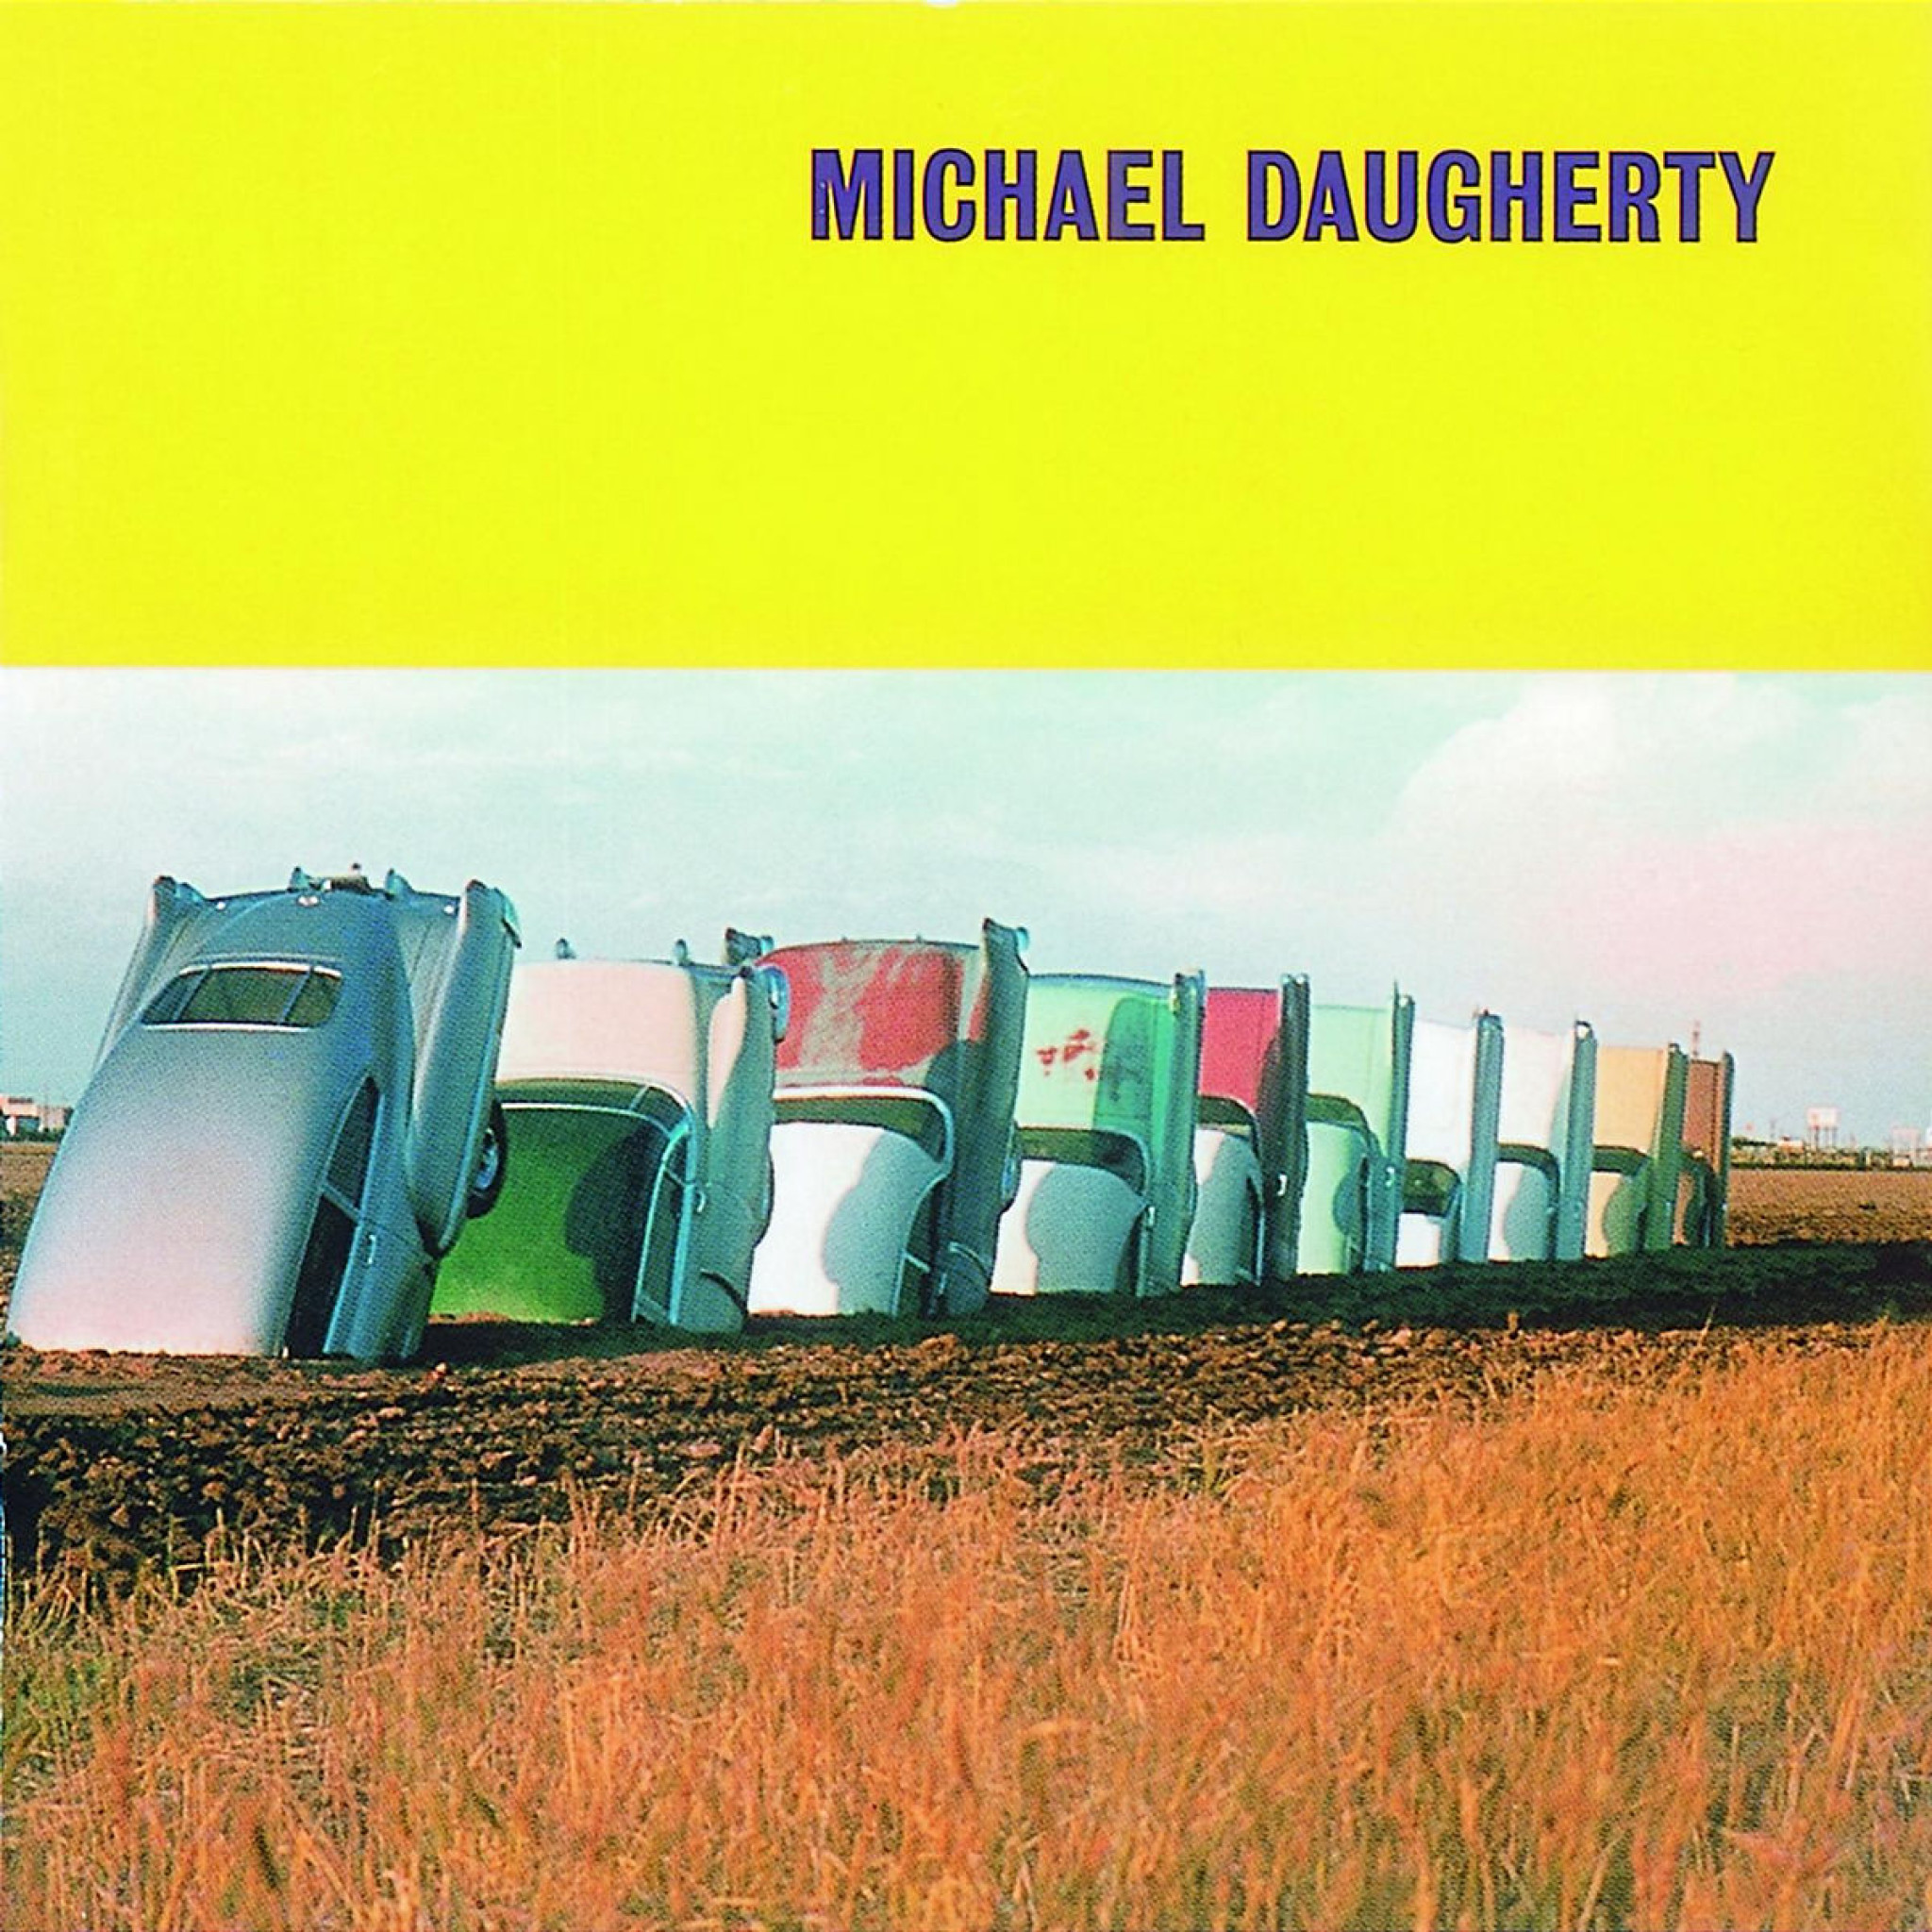 MICHAEL DAUGHERTY